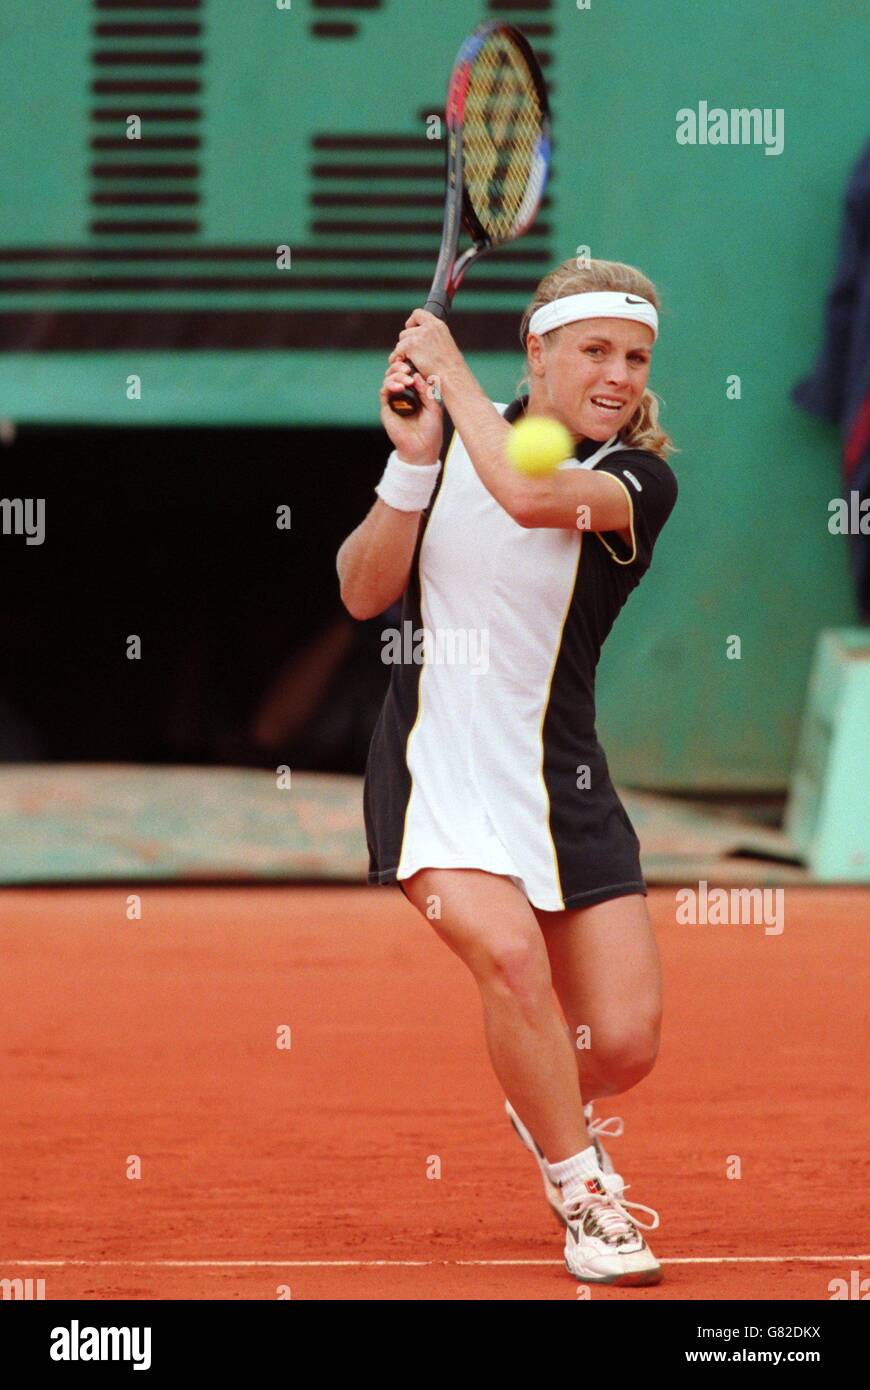 Französisch Tennis Open-Amanda Coetzer V Steffi Graf Stockfotografie - Alamy